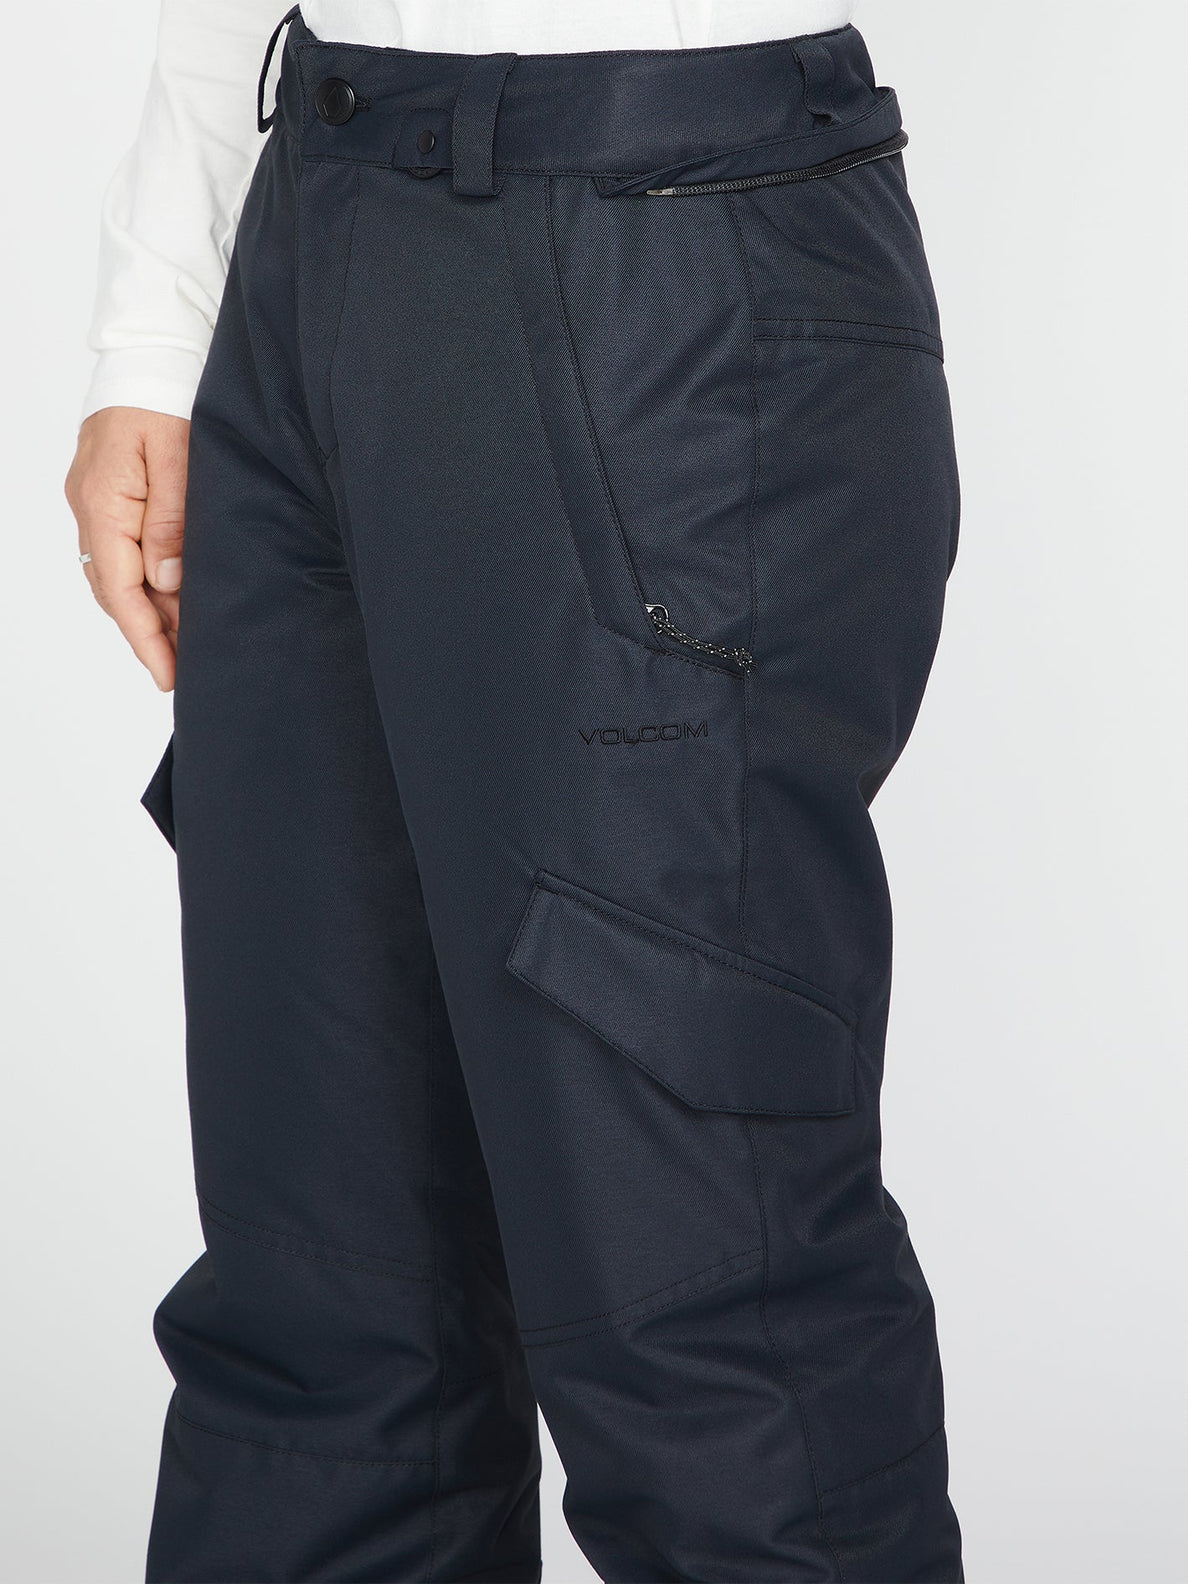 Pantalon de snowboard Femme Volcom Bridger Insulated - Noir